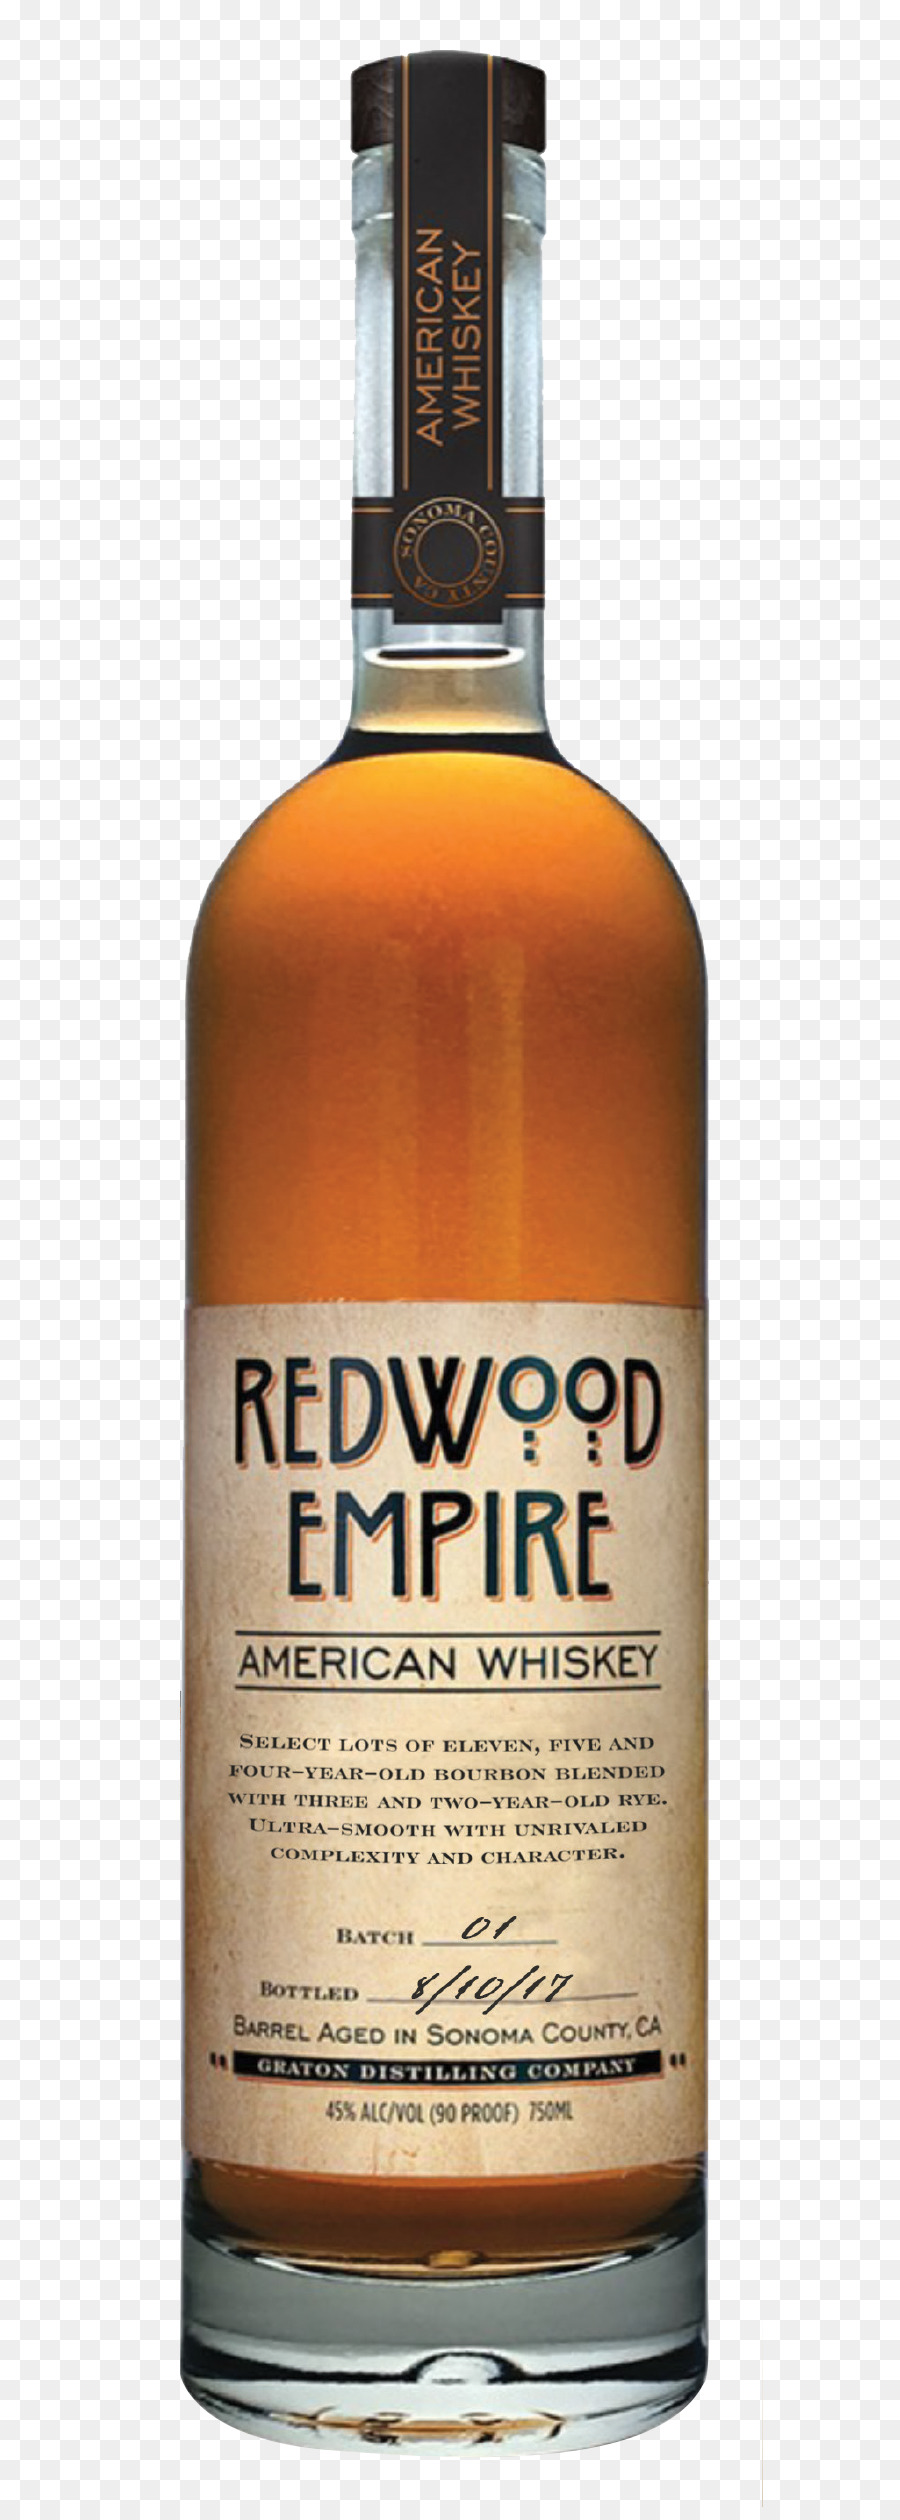 Tennessee whiskey Redwood National und State Parks Bourbon whiskey, amerikanischer whiskey-Likör - Wein